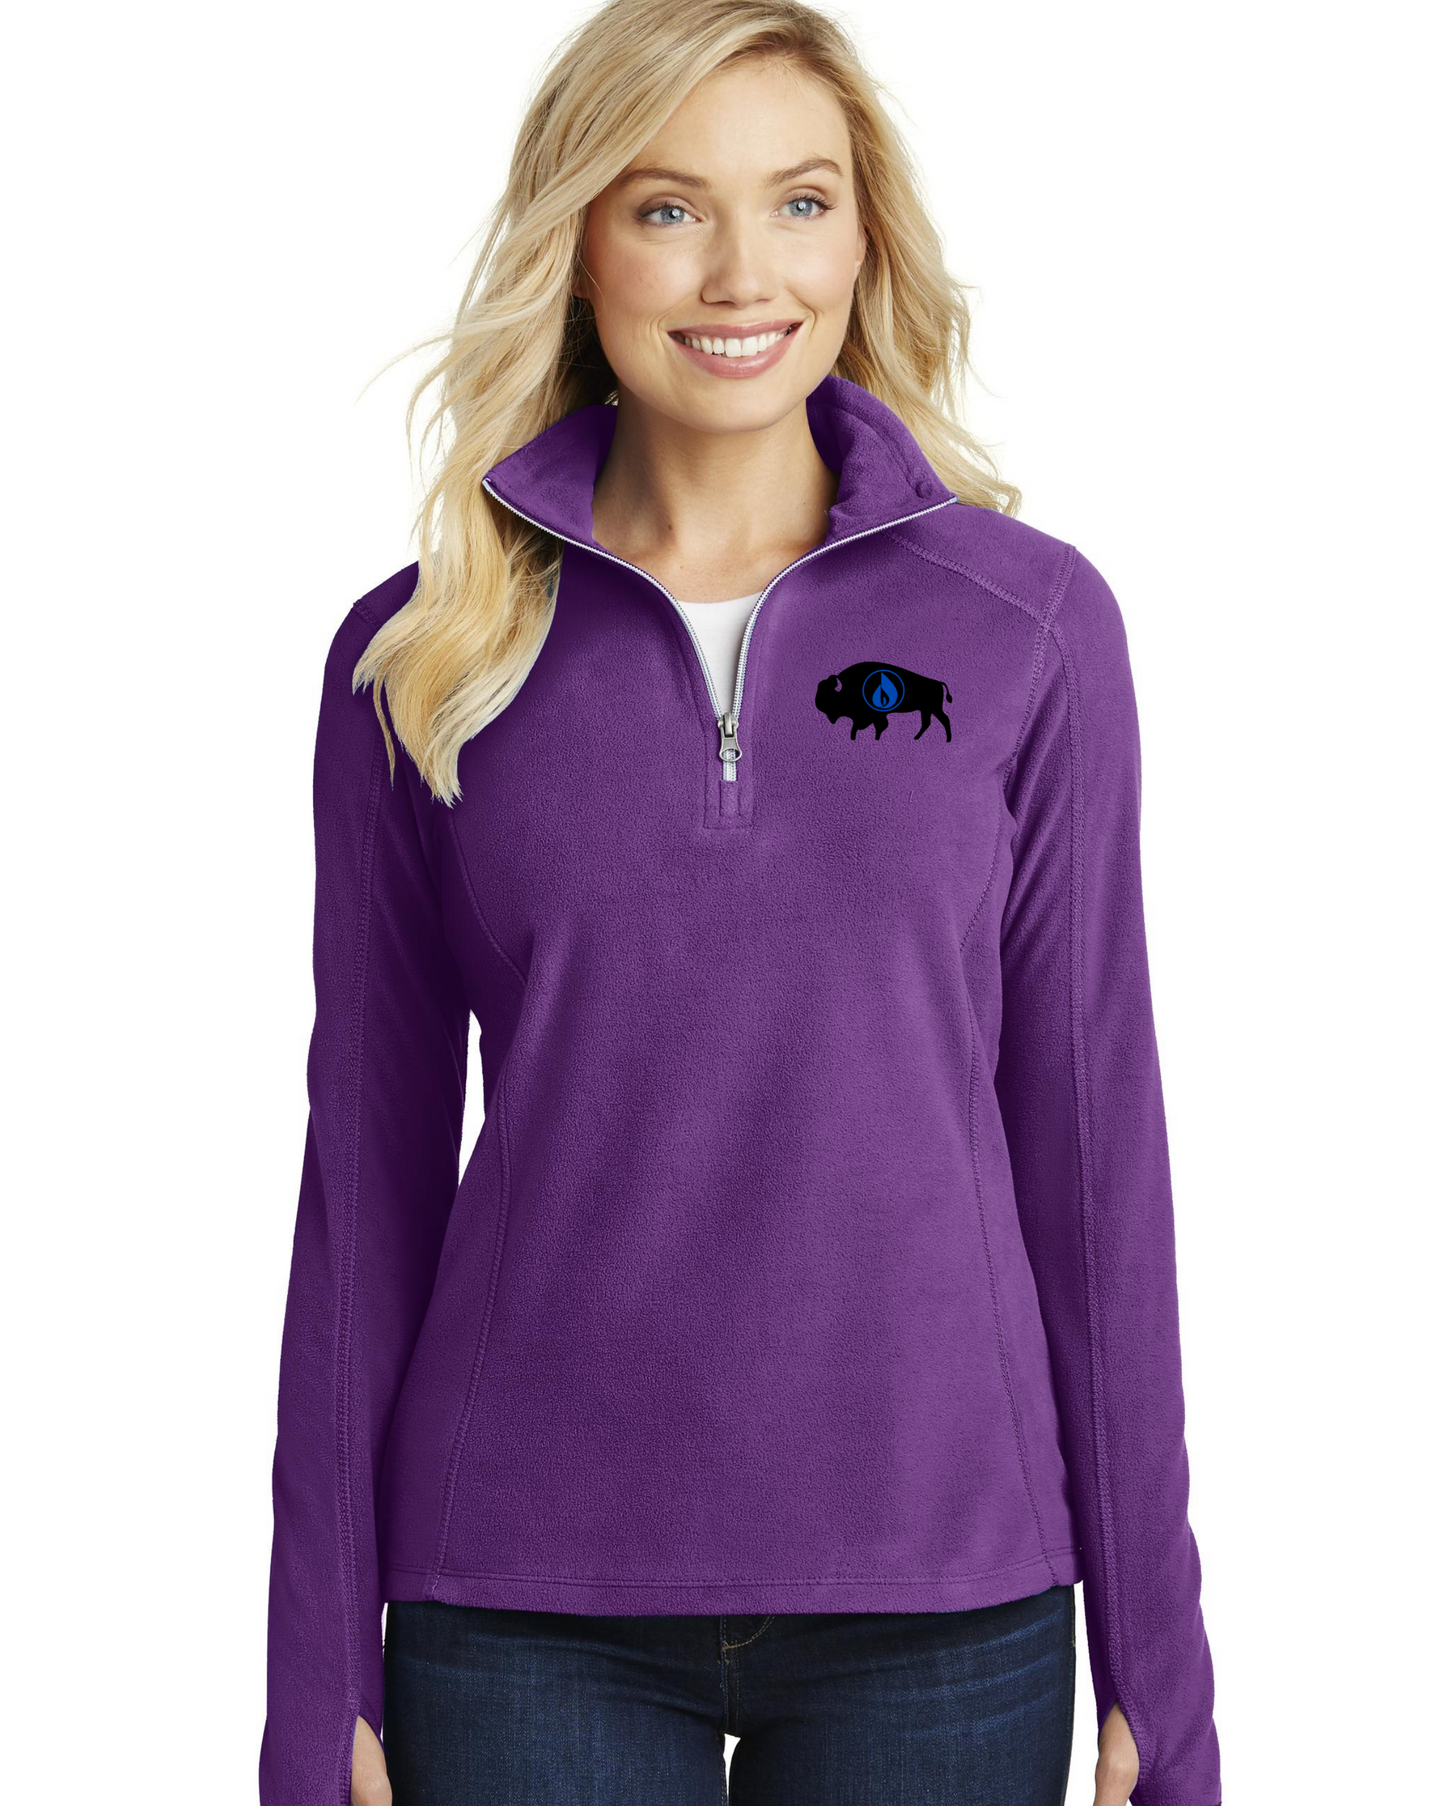 Ladies fleece zip jacket fleece- corporate with logo